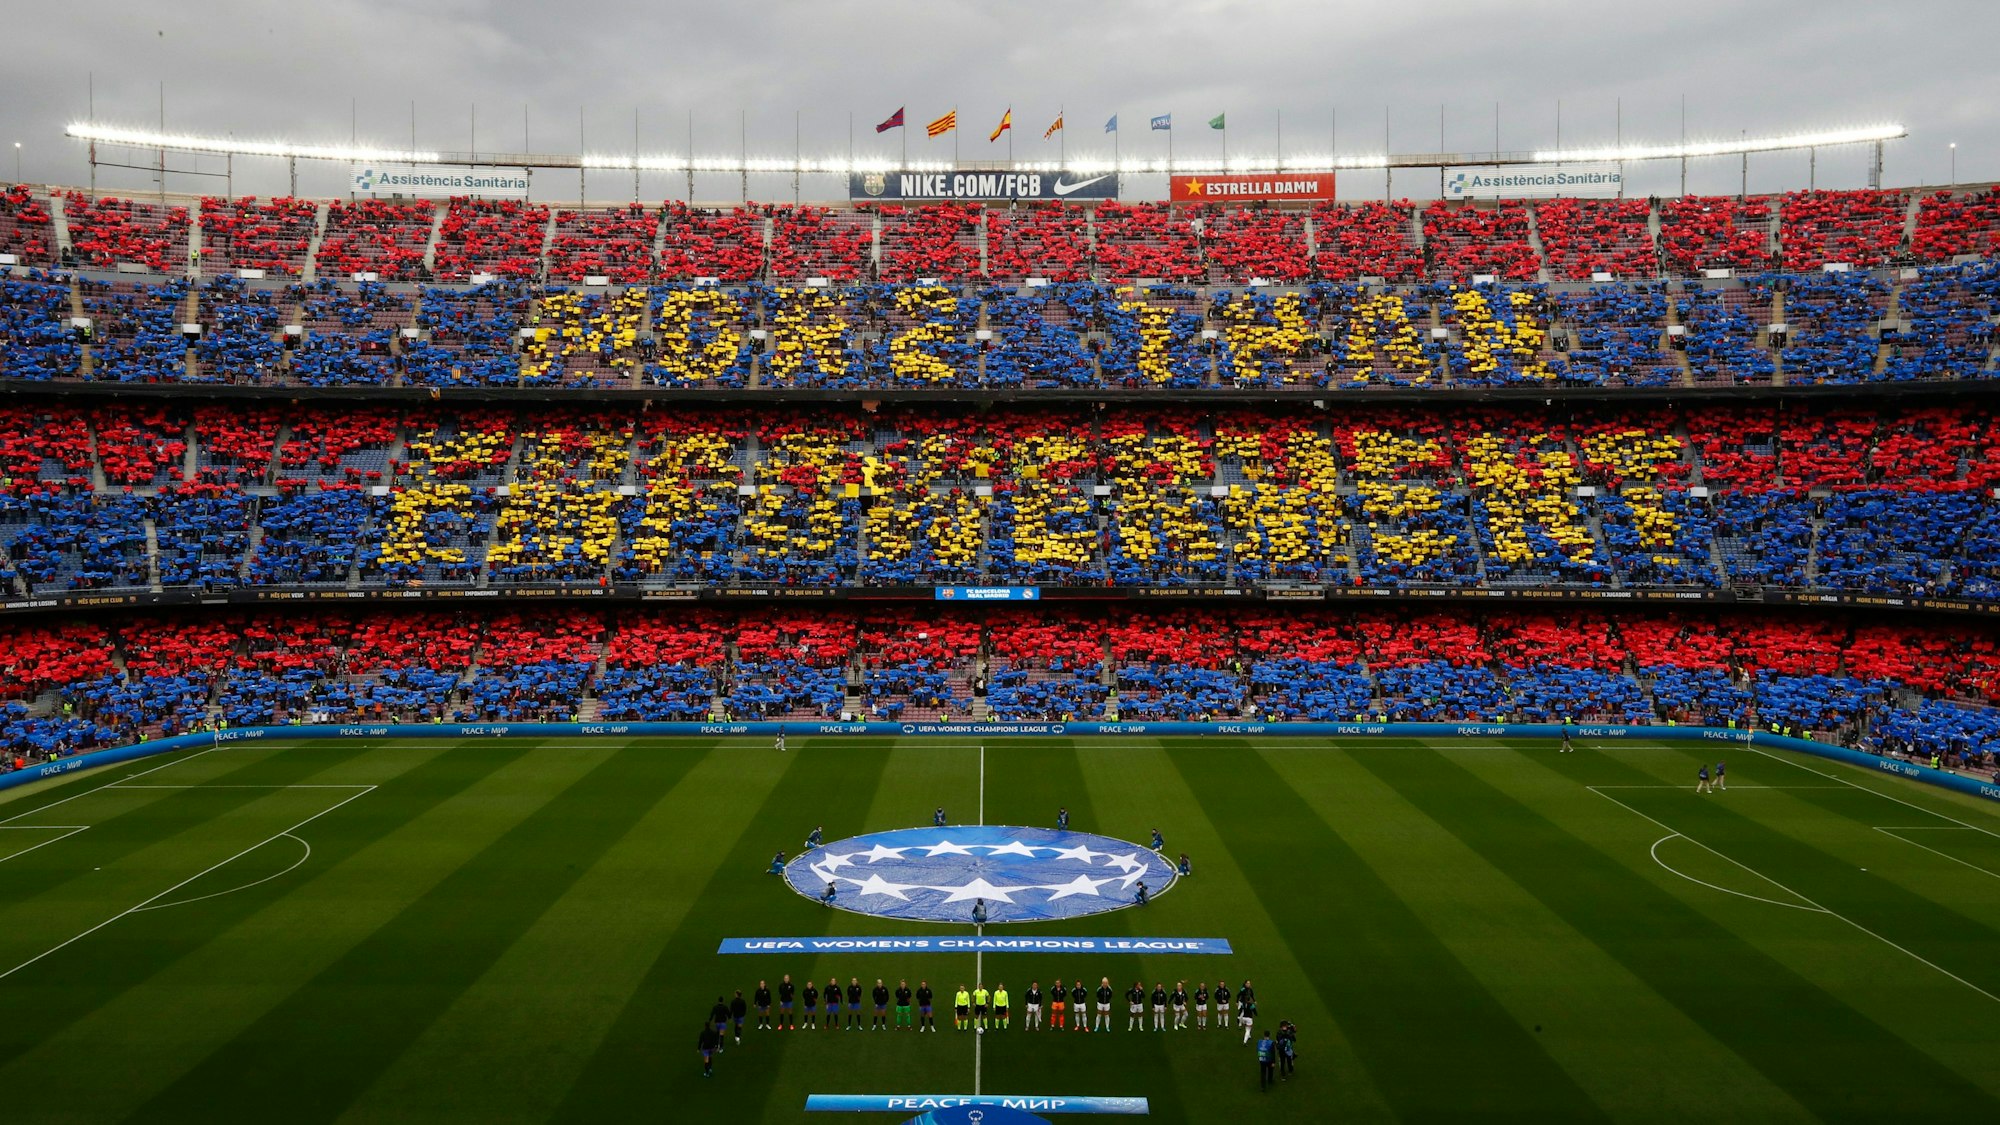 Mit einer großen Choreo begrüßten die Fans die Spielerinnen im Rekord-Duell zwischen dem FC Barcelona und Real Madrid im Camp Nou.